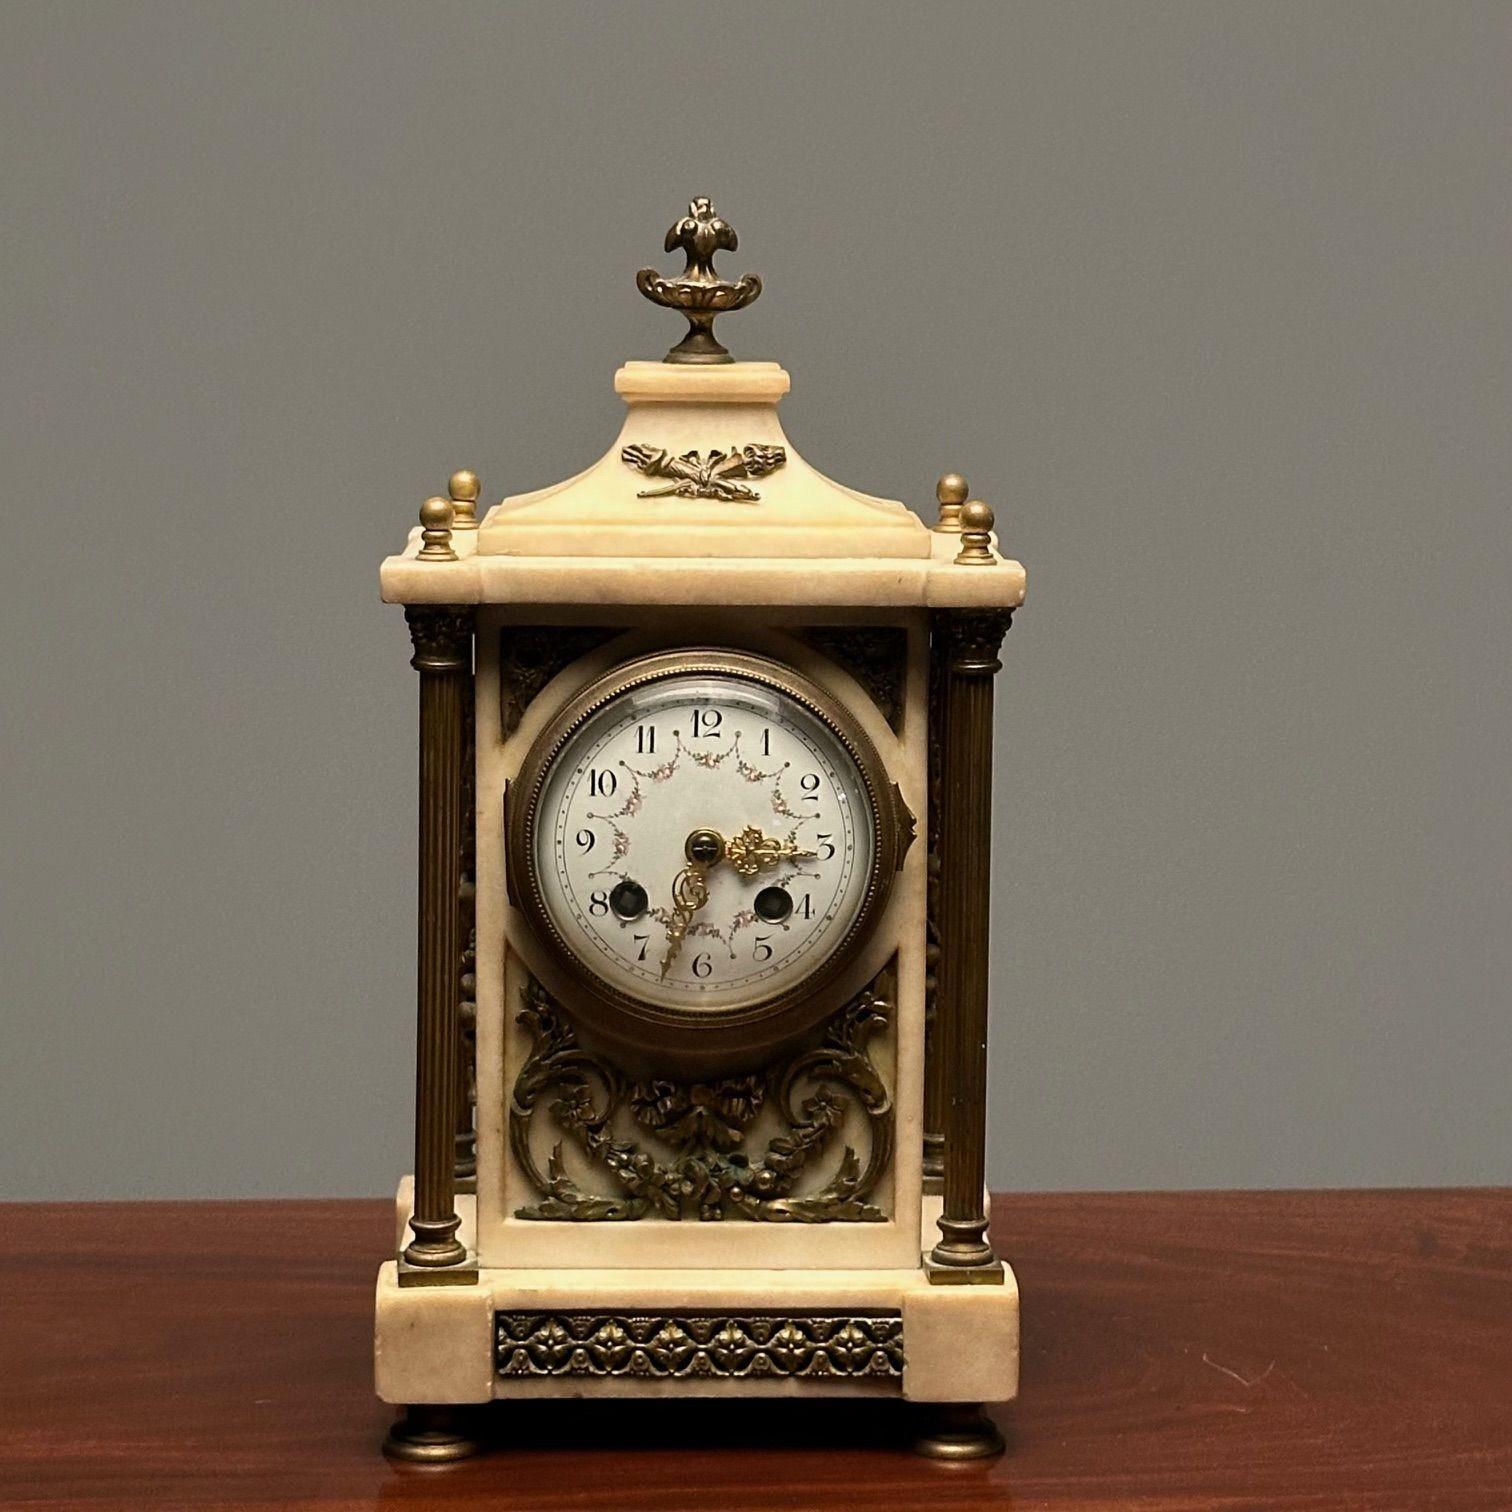 Reloj francés de manto, ménsula o sobremesa de mármol y bronce, Francia, Firmado`

Un encantador reloj pequeño en forma de cofre con forma de bronce dorado y mármol, en funcionamiento, firmado por el artista y fabricado en Francia estampado en las